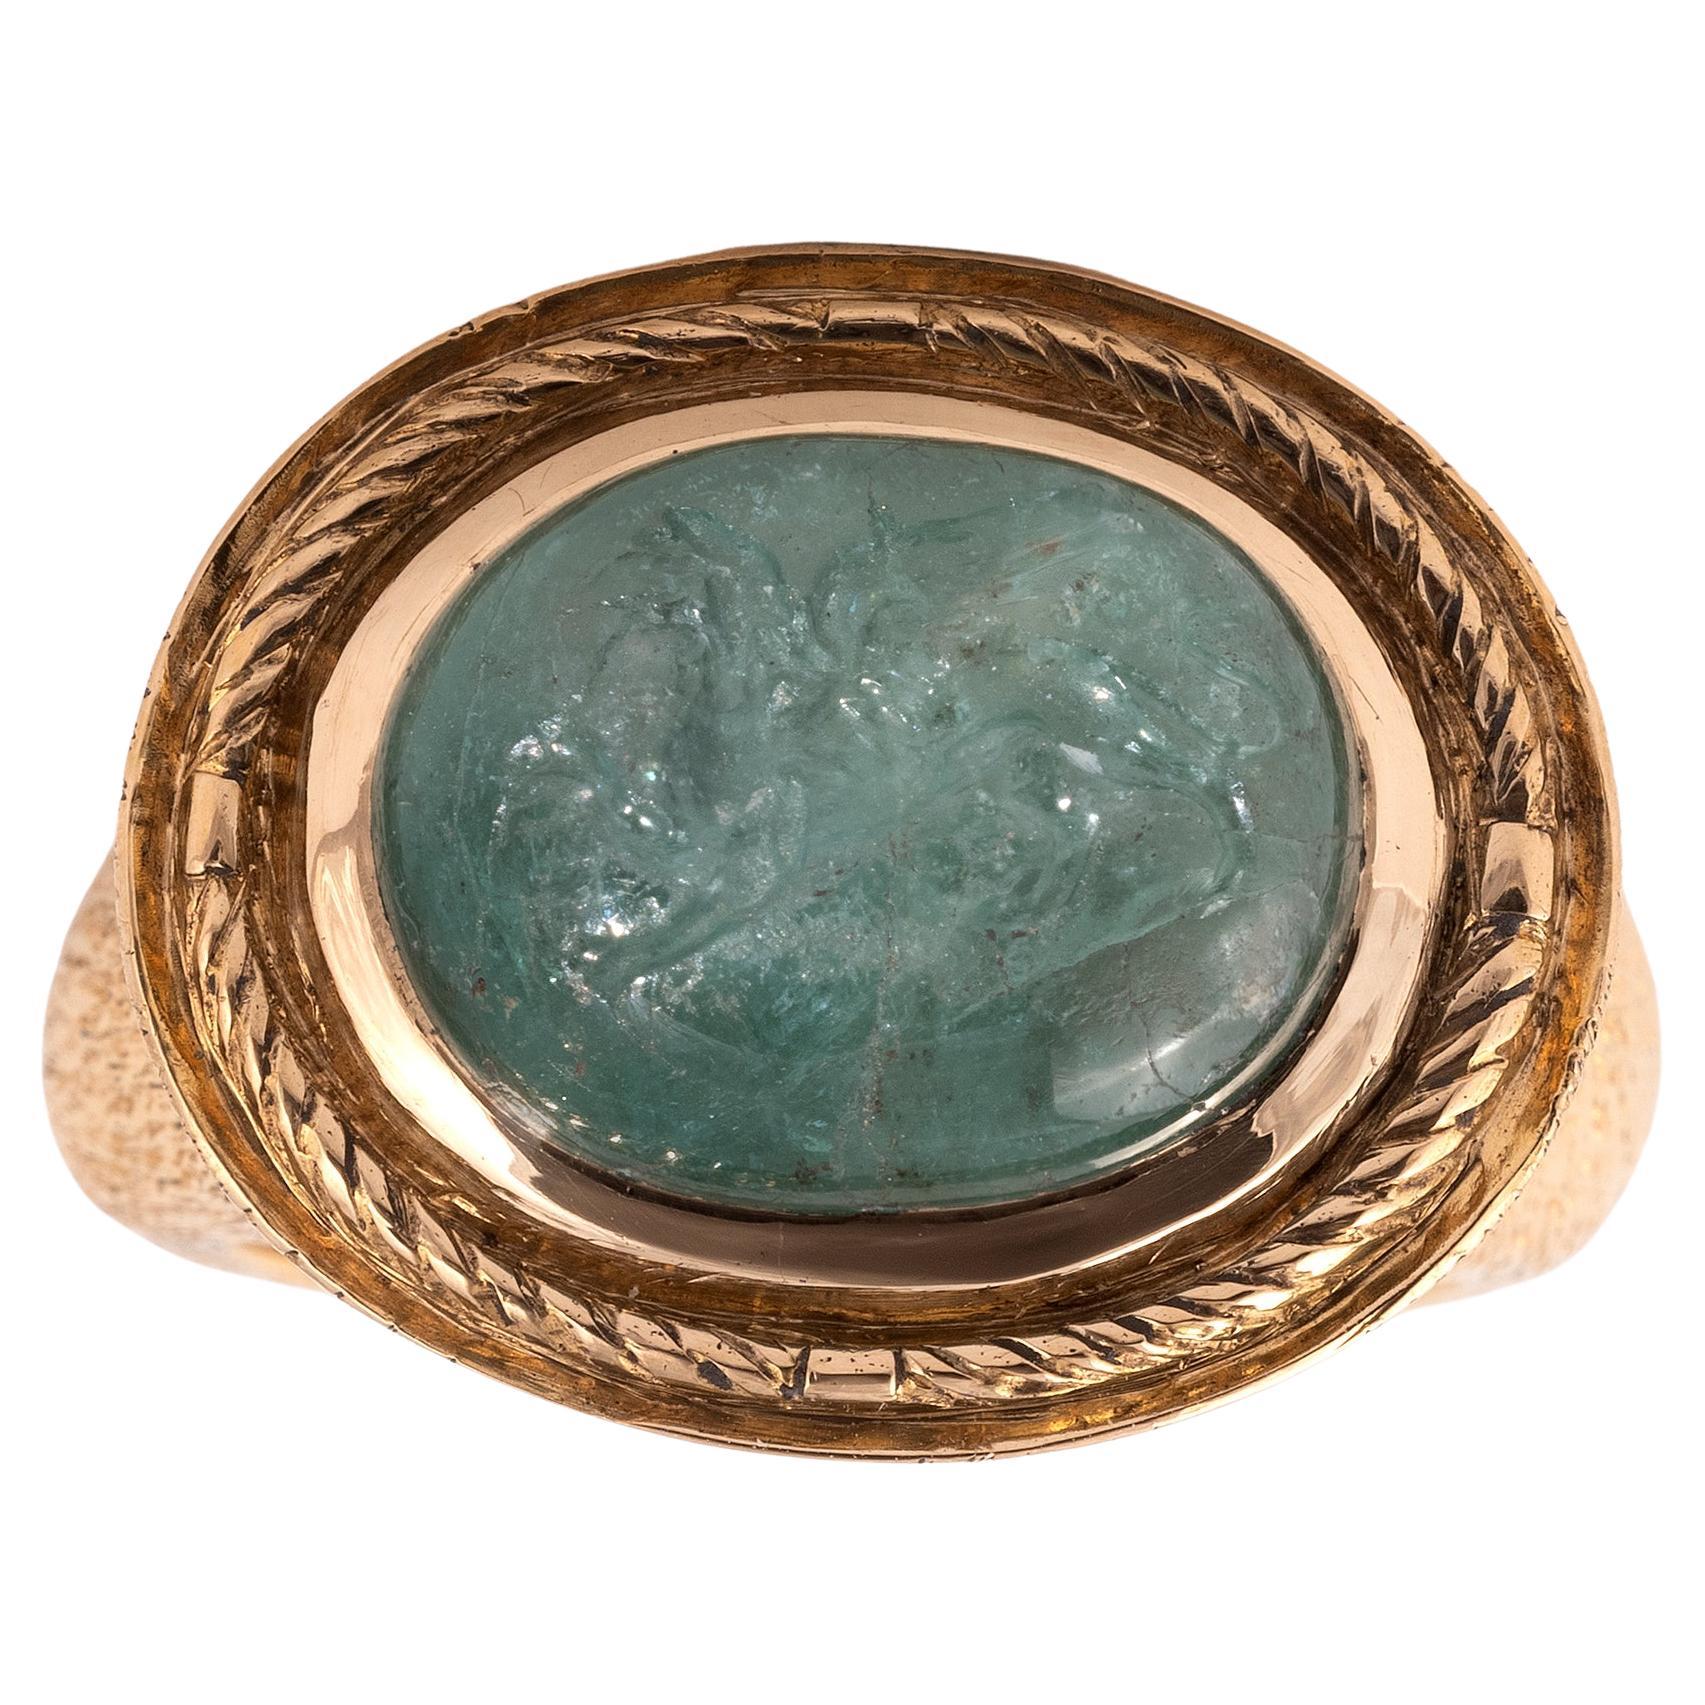 Smaragd-Intaglio-Ring aus dem späten 18. Jahrhundert mit Griffin